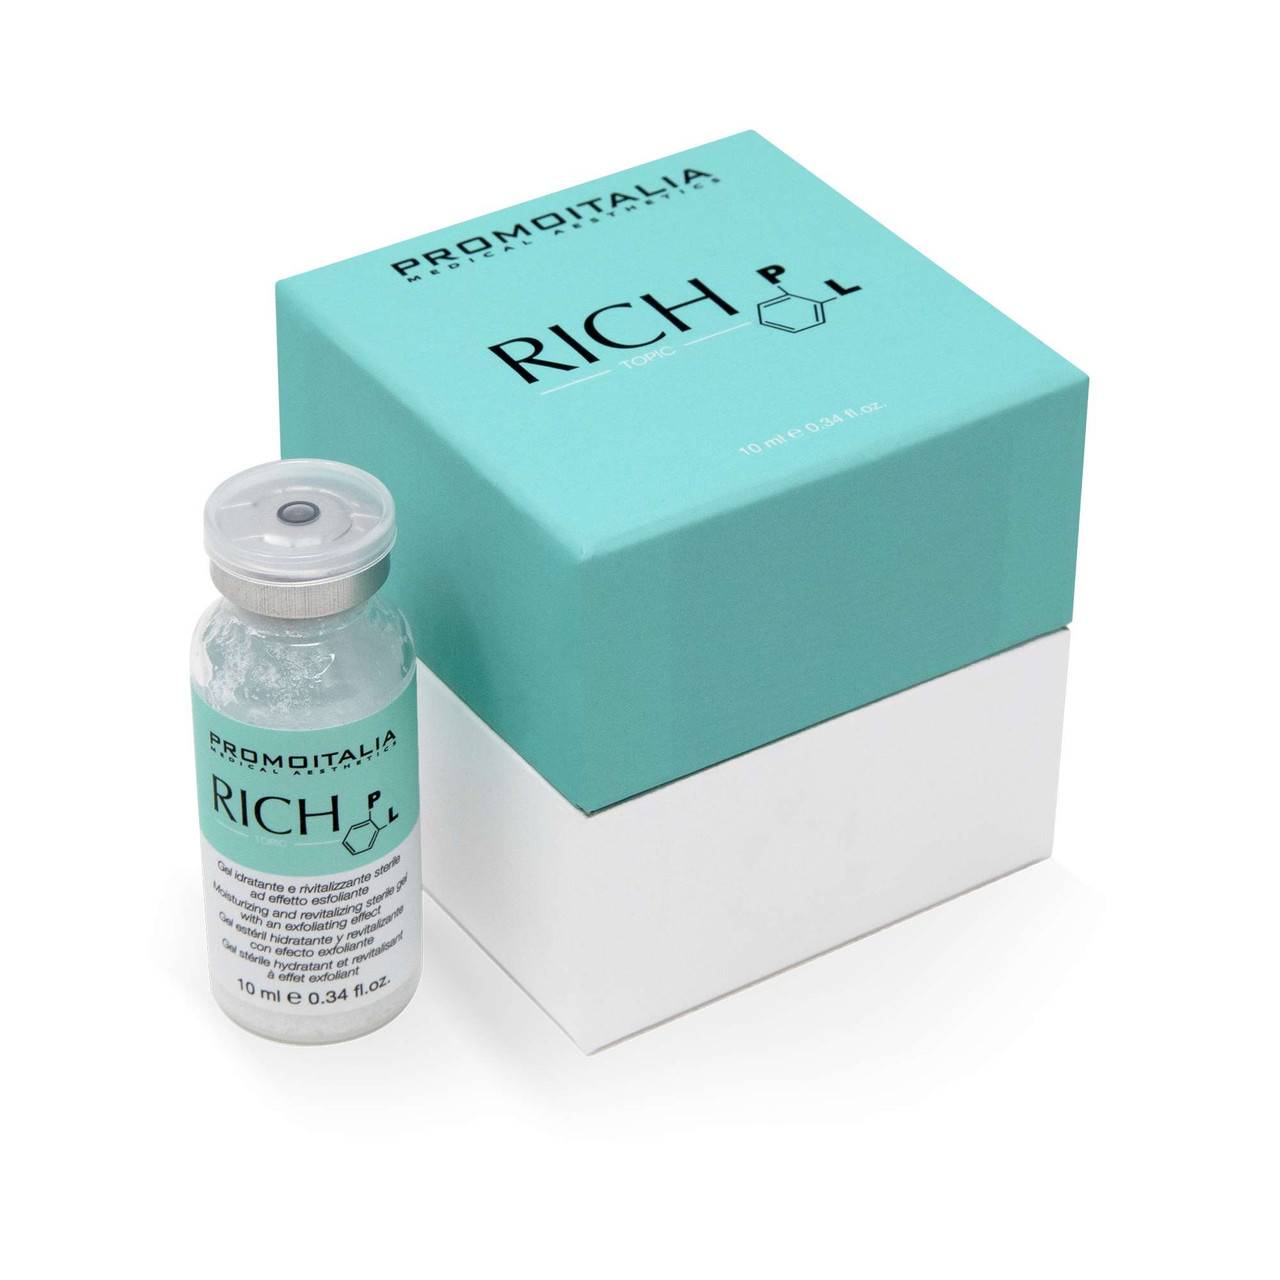 Rich PL 1 x 10ml Promoitalia Hyaluronic & Polylactic Acid - UKMEDI